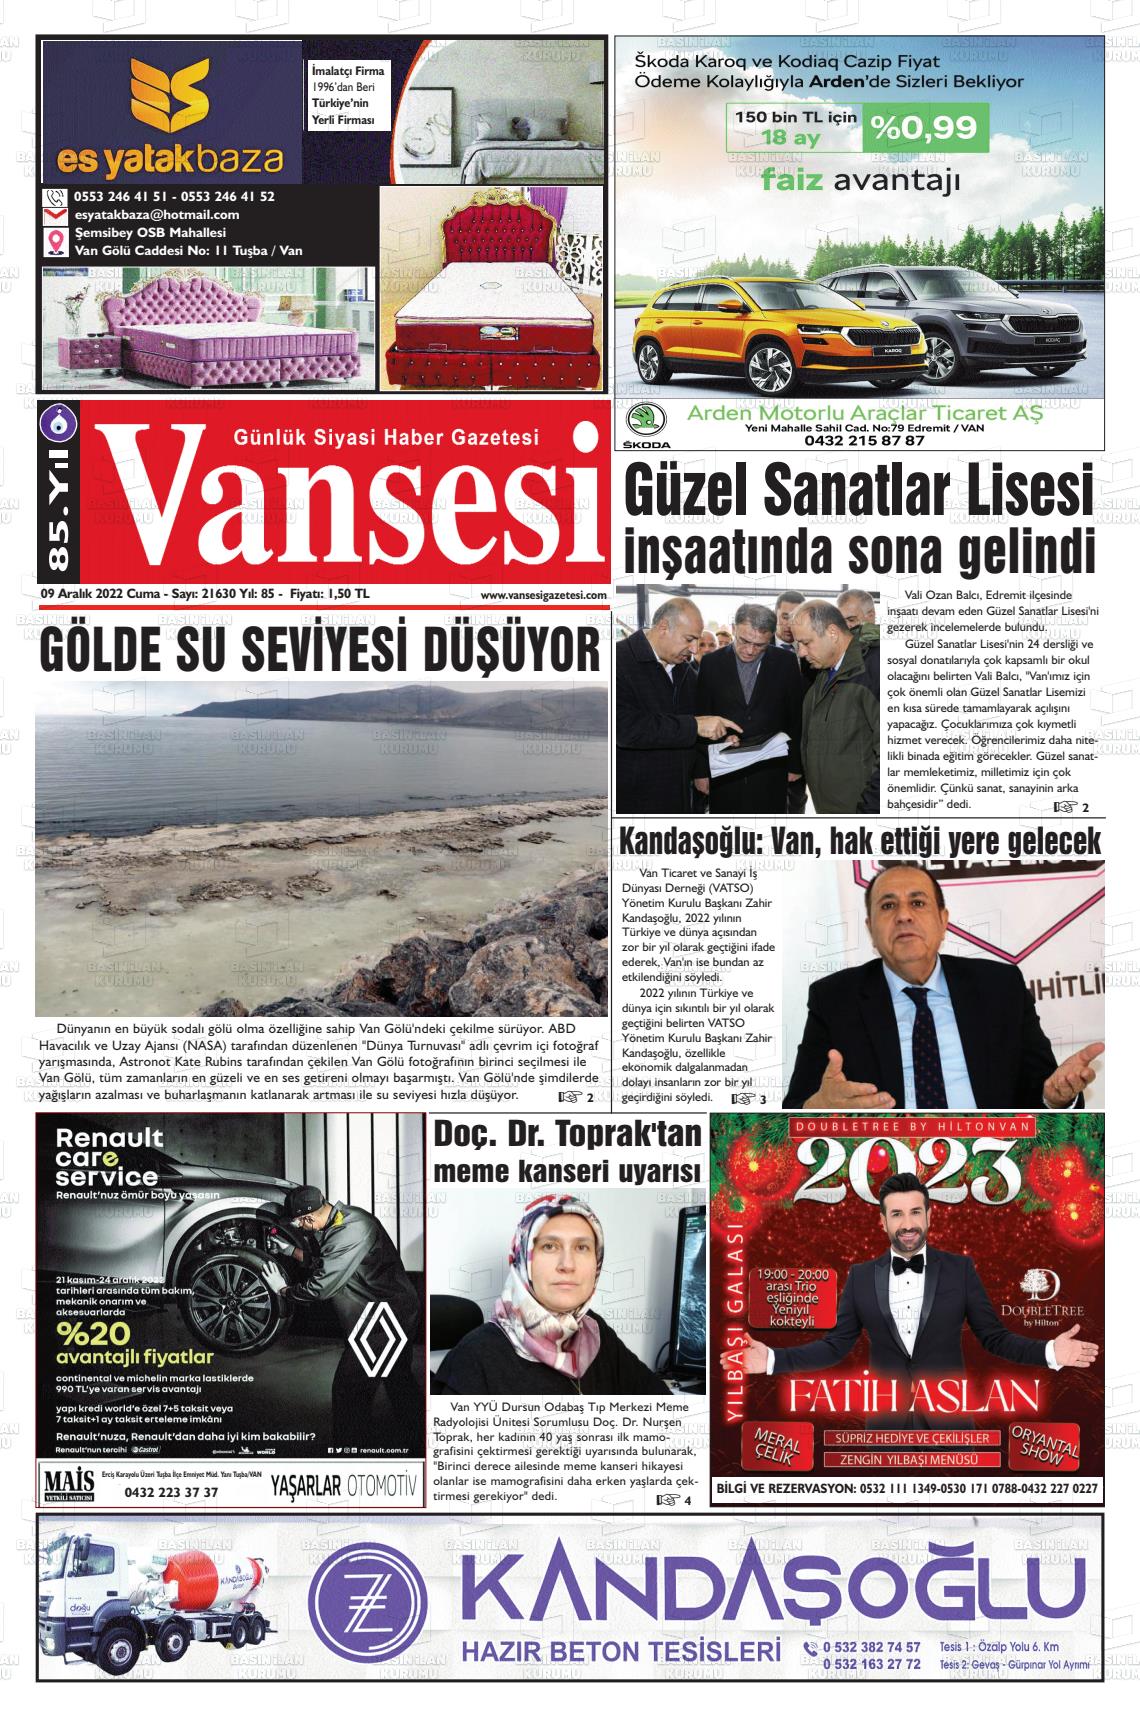 09 Aralık 2022 Vansesi Gazete Manşeti